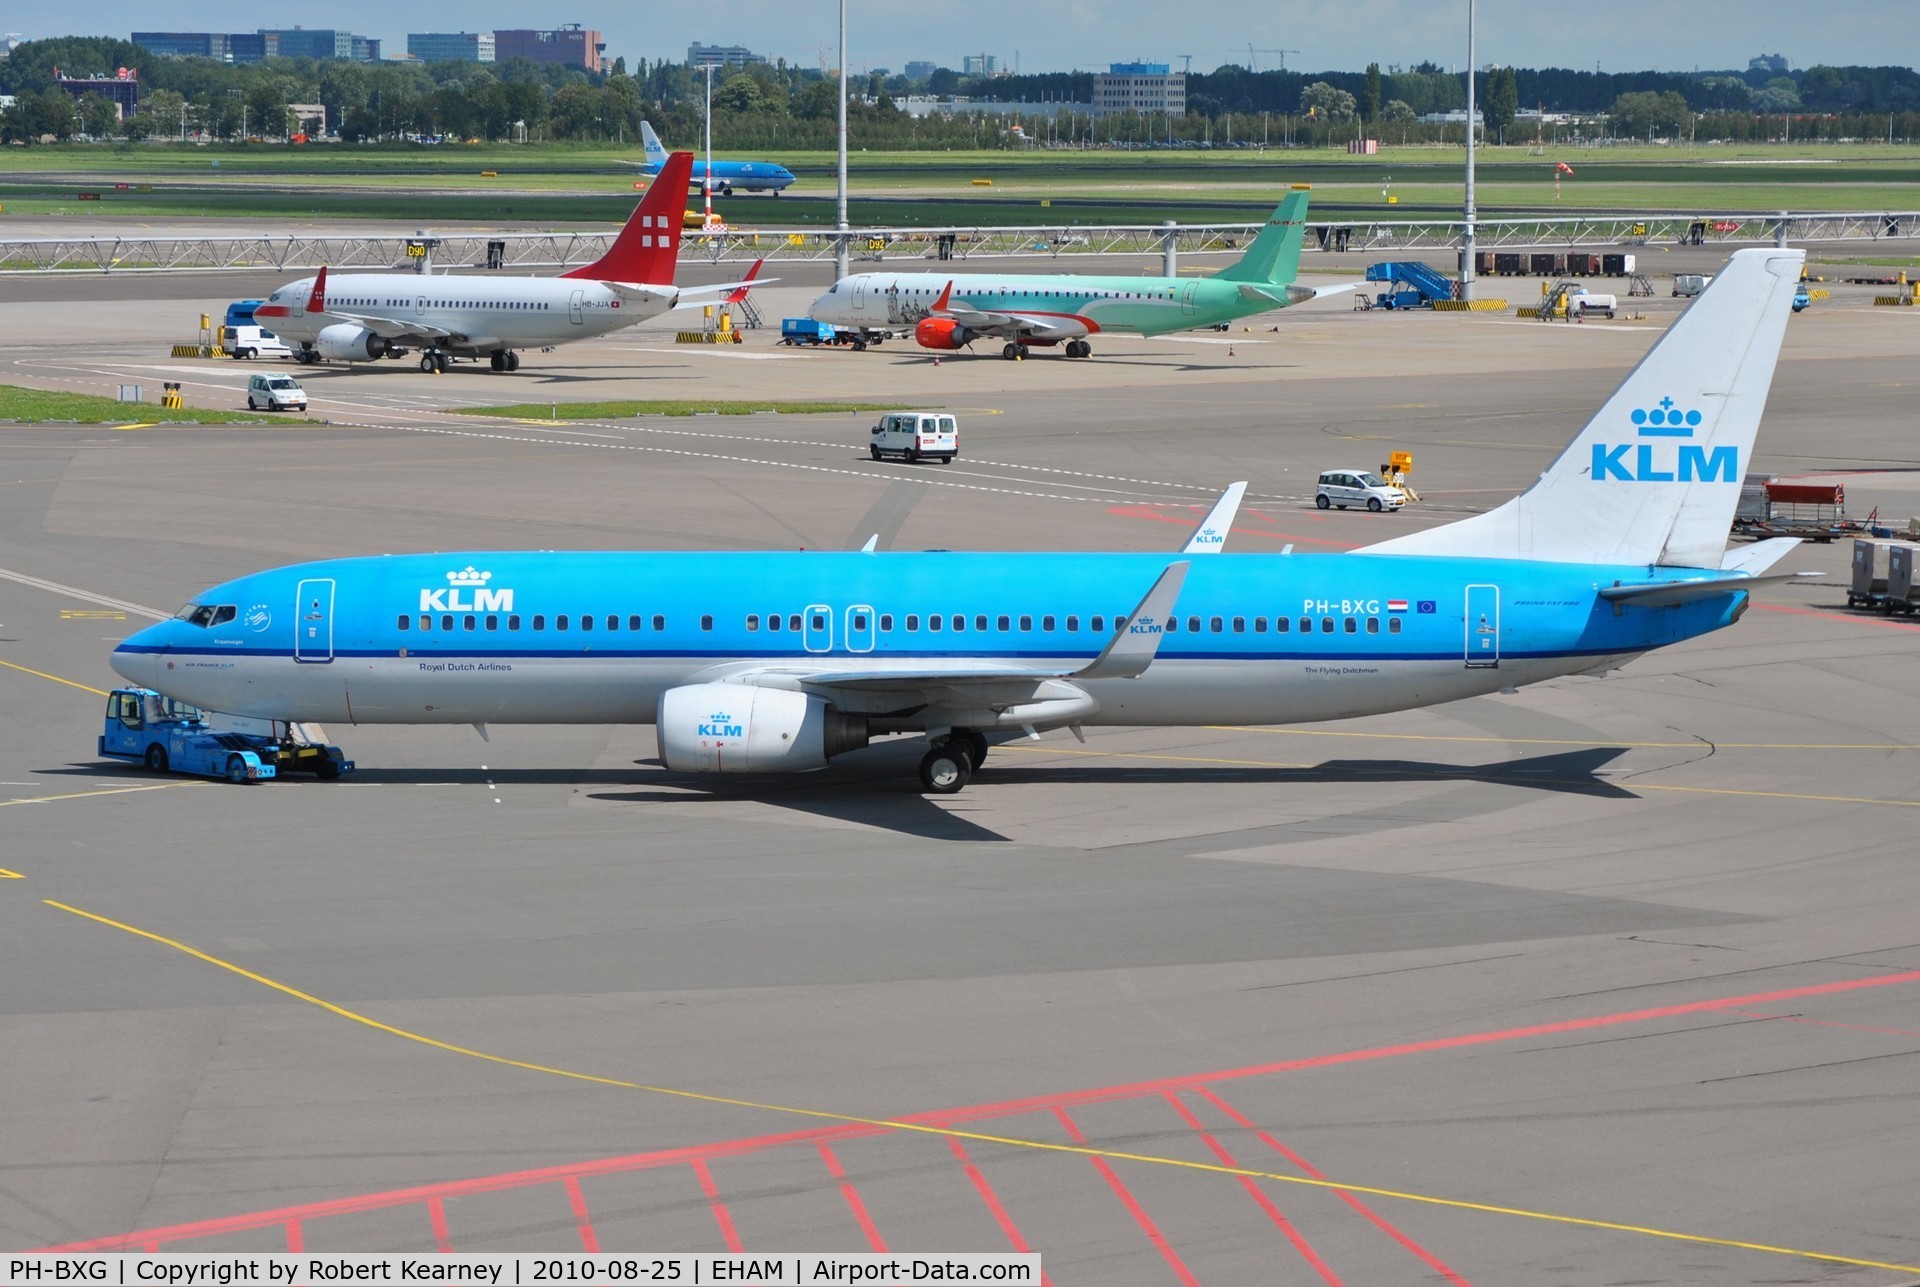 PH-BXG, 2000 Boeing 737-8K2 C/N 30357, KLM being towed to remote parking